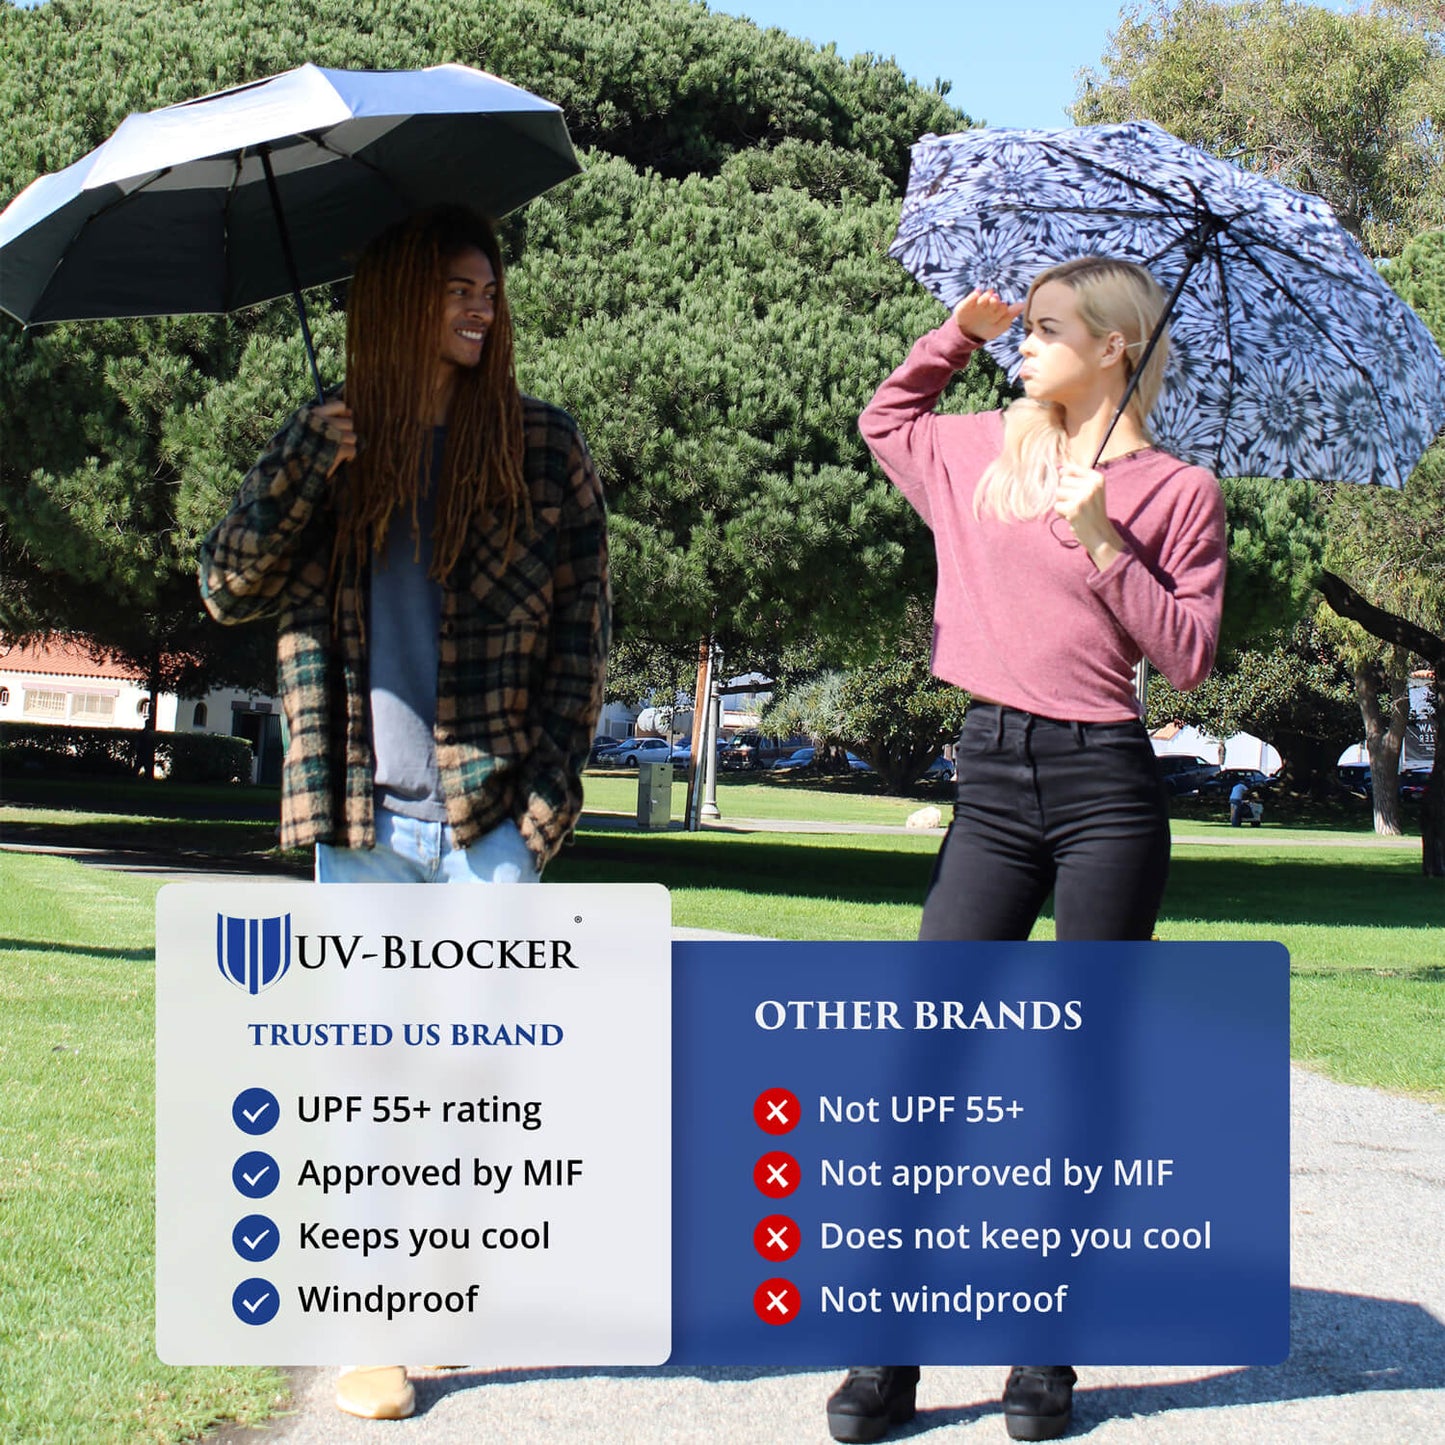 UV-Blocker Fashion Sun Umbrella is the #1 Trusted Brand